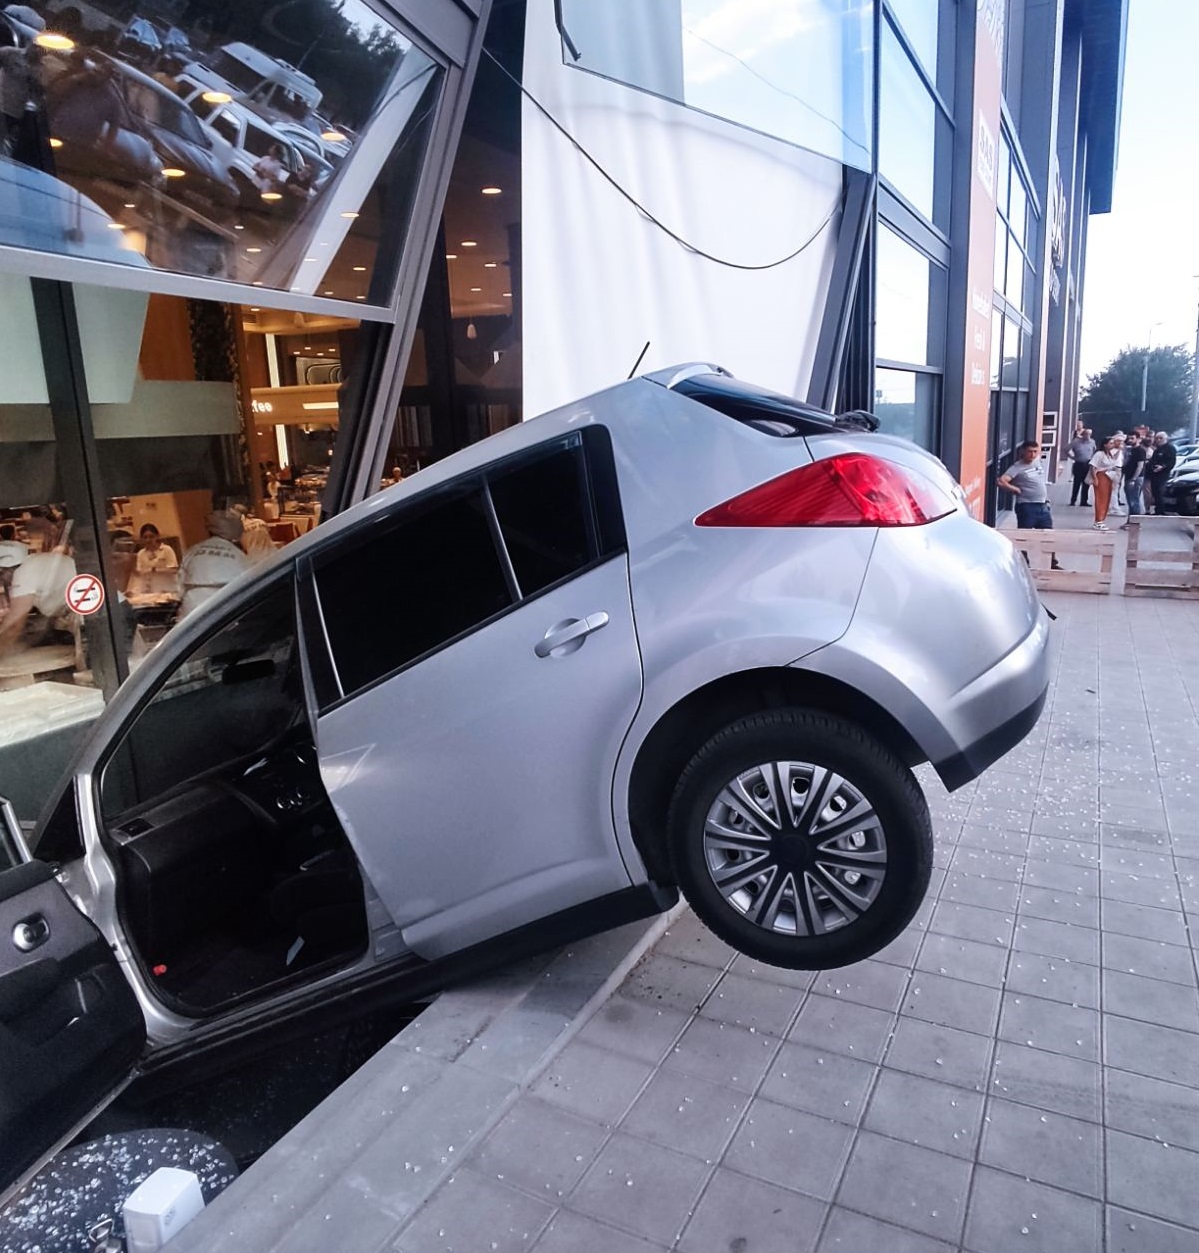 Երևանում «Nissan»-ը դուրս է եկել ճանապարհի երթևեկելի հատվածից և բախվել «ՍԱՍ» ֆուդ-կորտի արտաքին երեսպատման ապակիներին